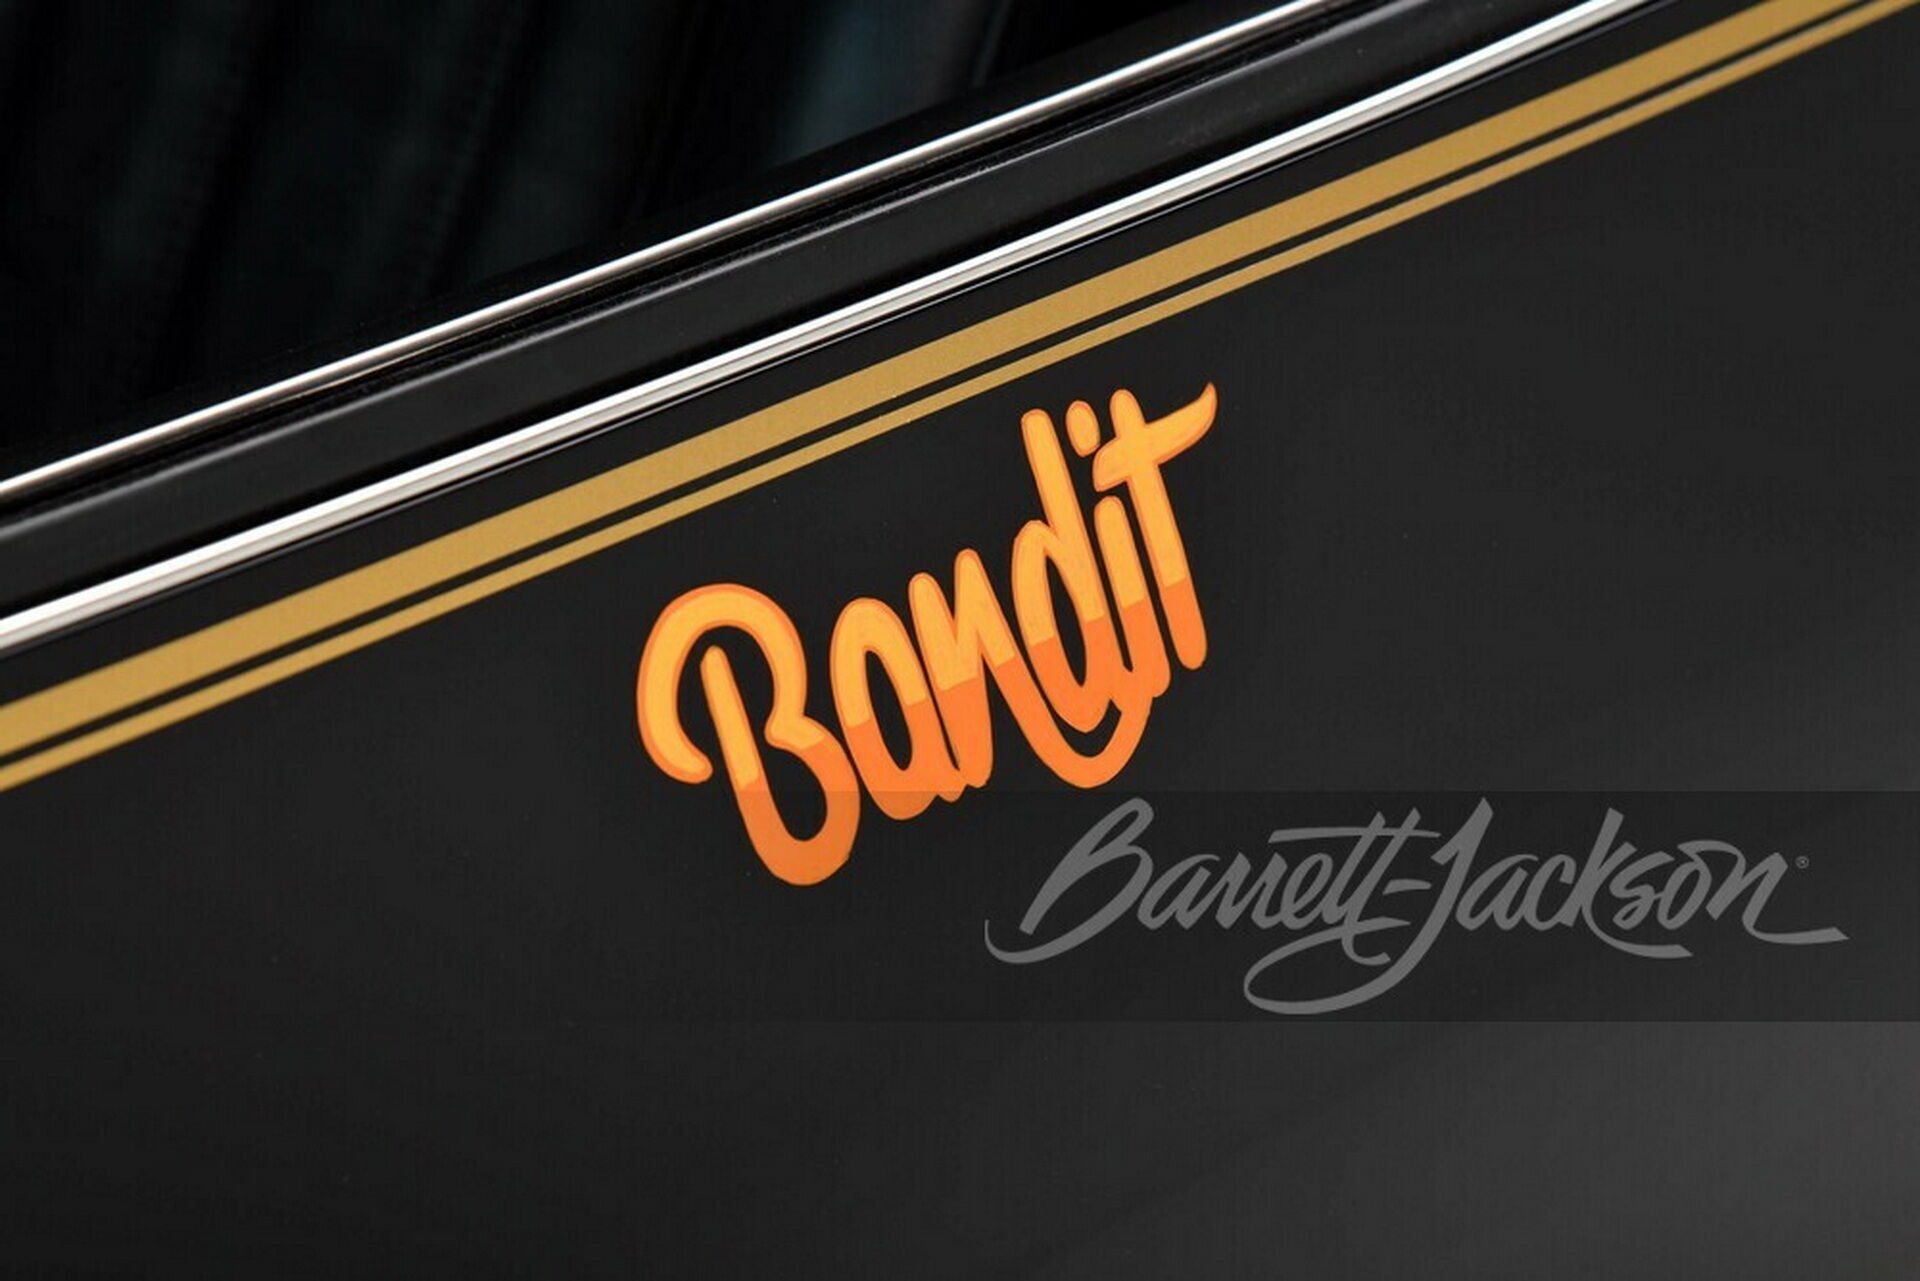 Машину Рейнольдса украшают декоративные надписи "Bandit" и фирменная символика модели